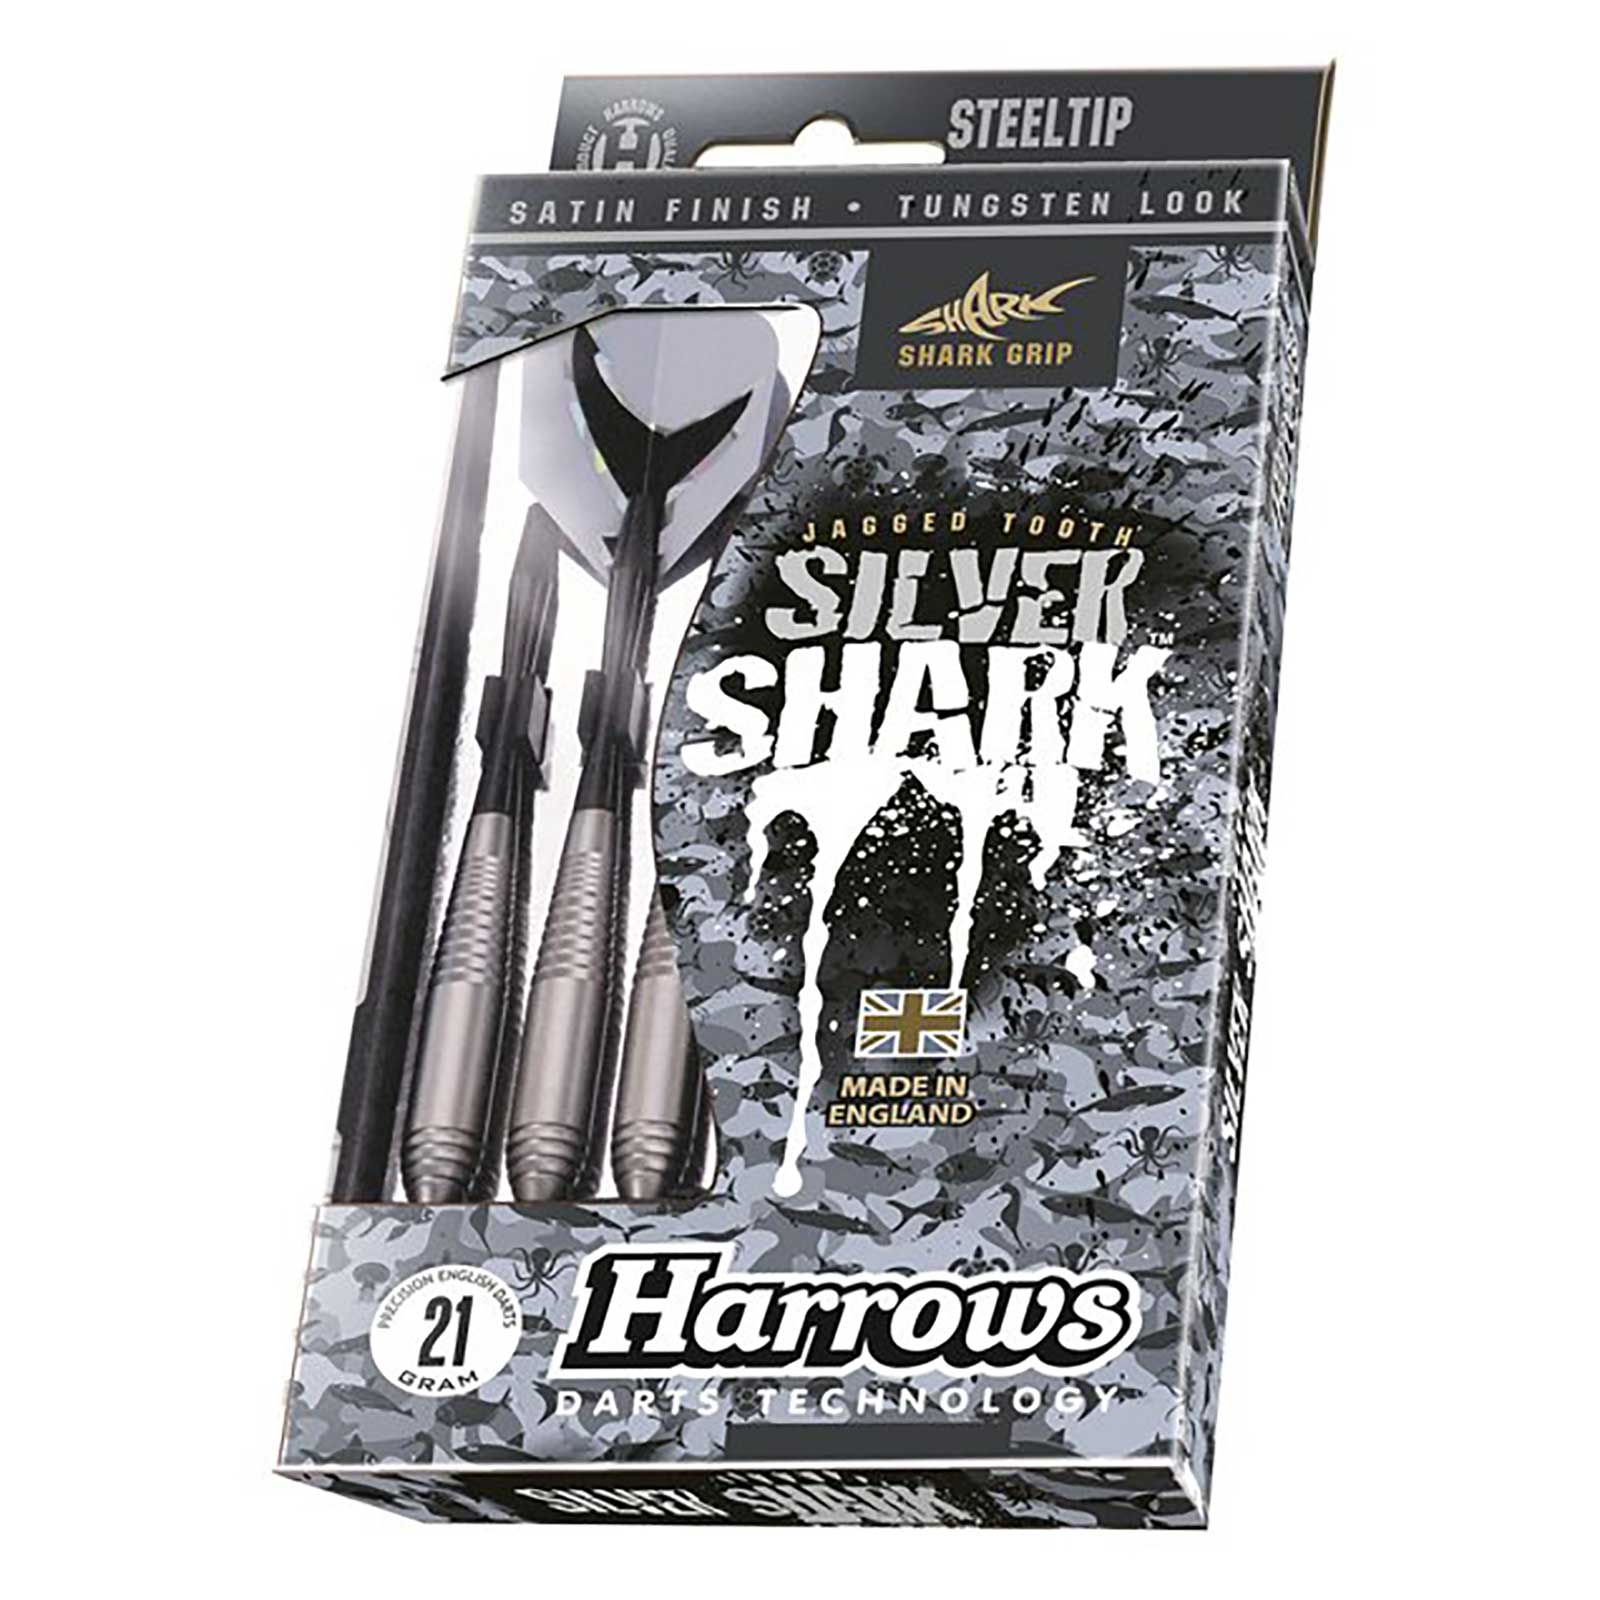 HARROWS SILVER SHARK 21GR